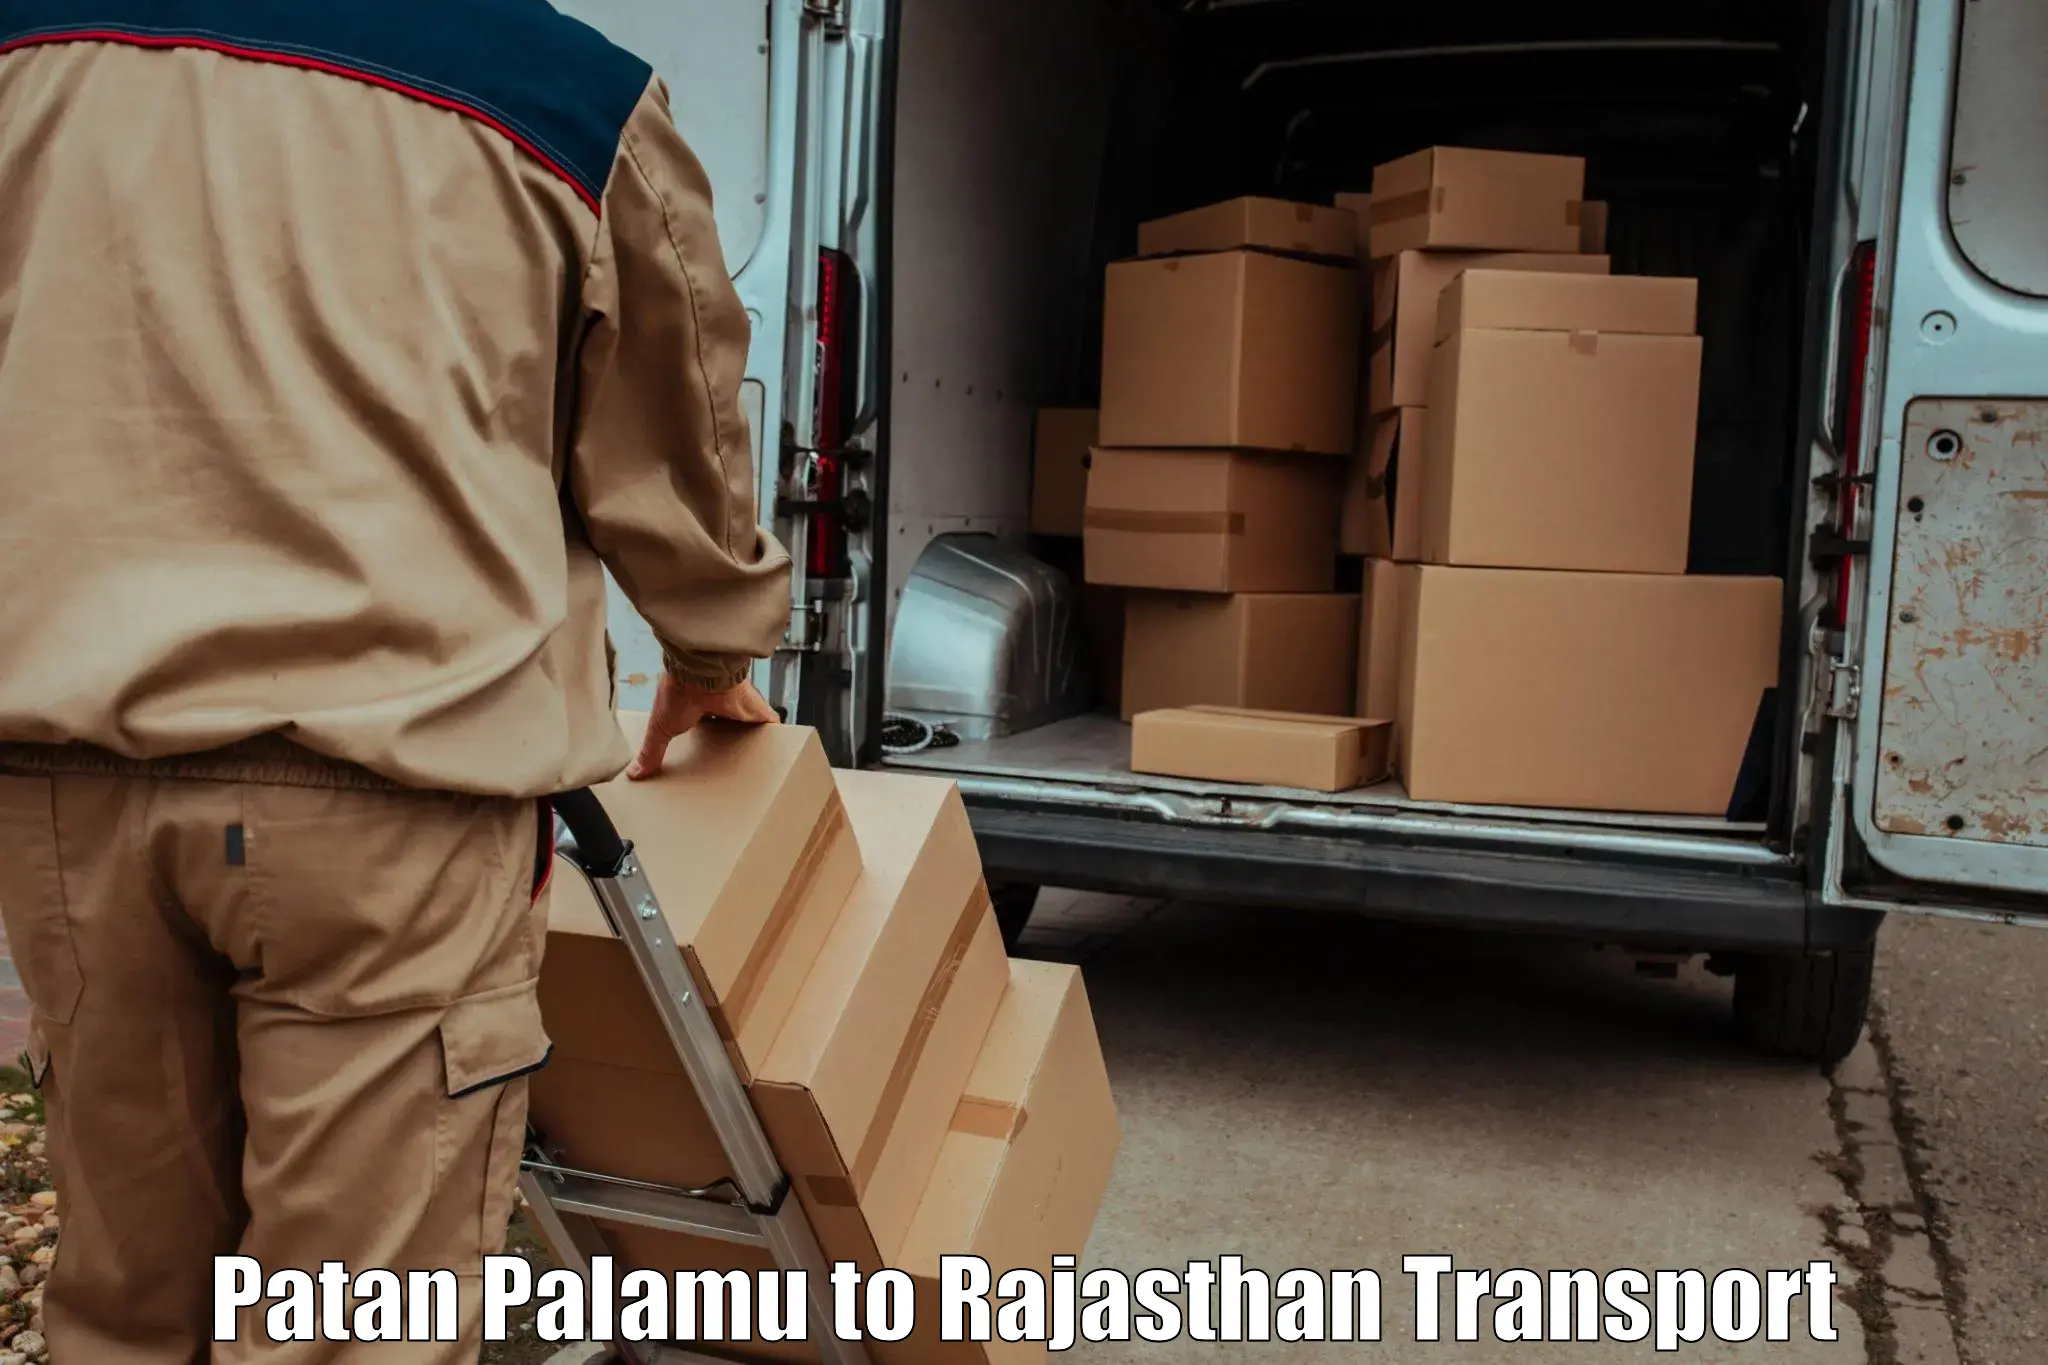 Vehicle transport services Patan Palamu to Kapasan